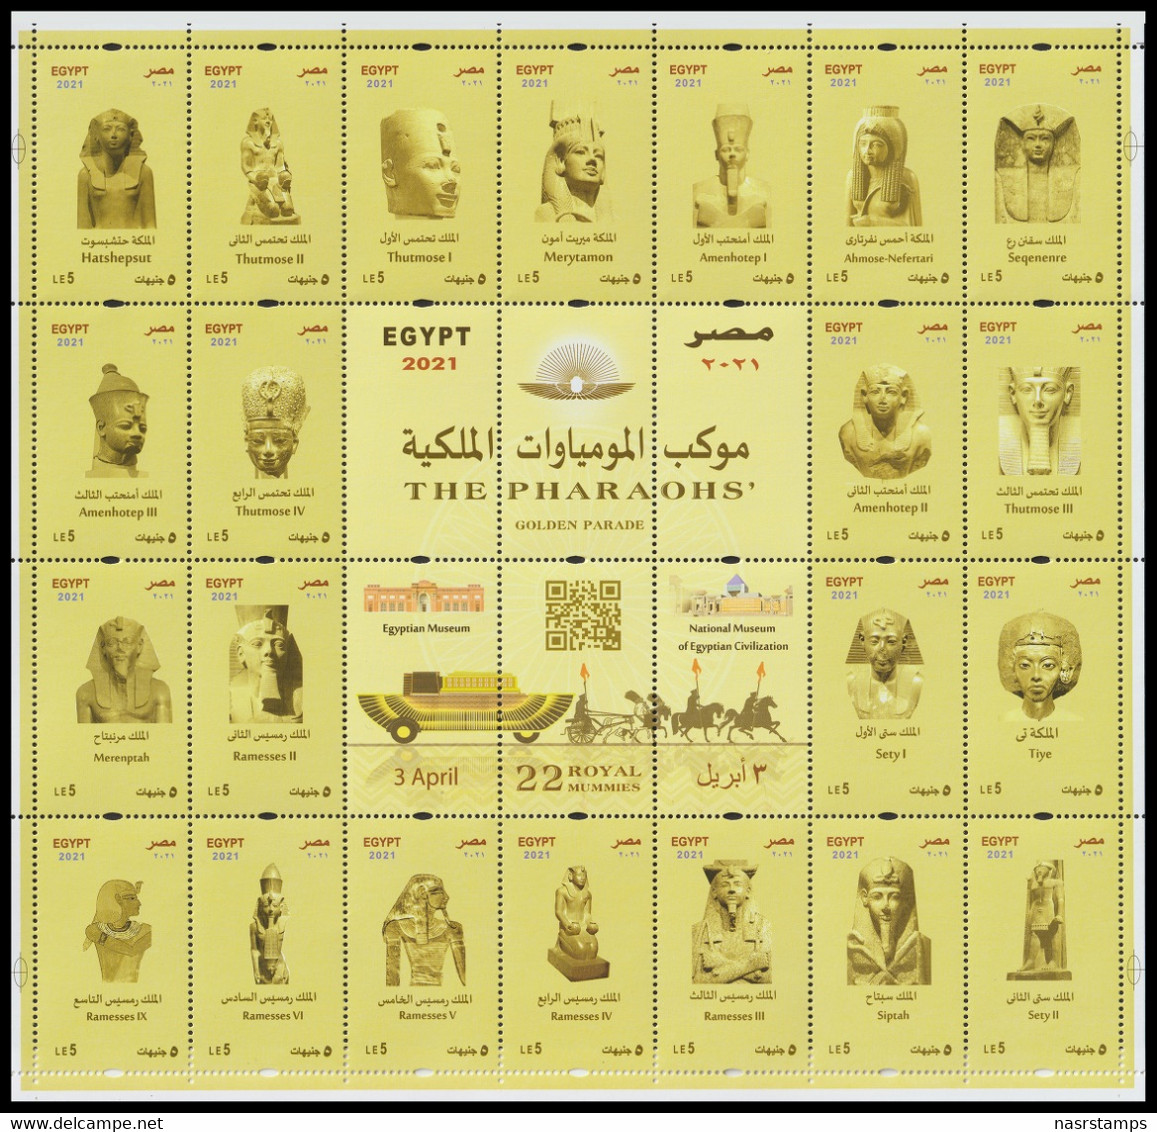 Egypt - 2021 - NEW - Mini Sheet - ( THE PHARAOHS Golden Parade - 3 April 2021 ) - MNH (**) - Nuovi